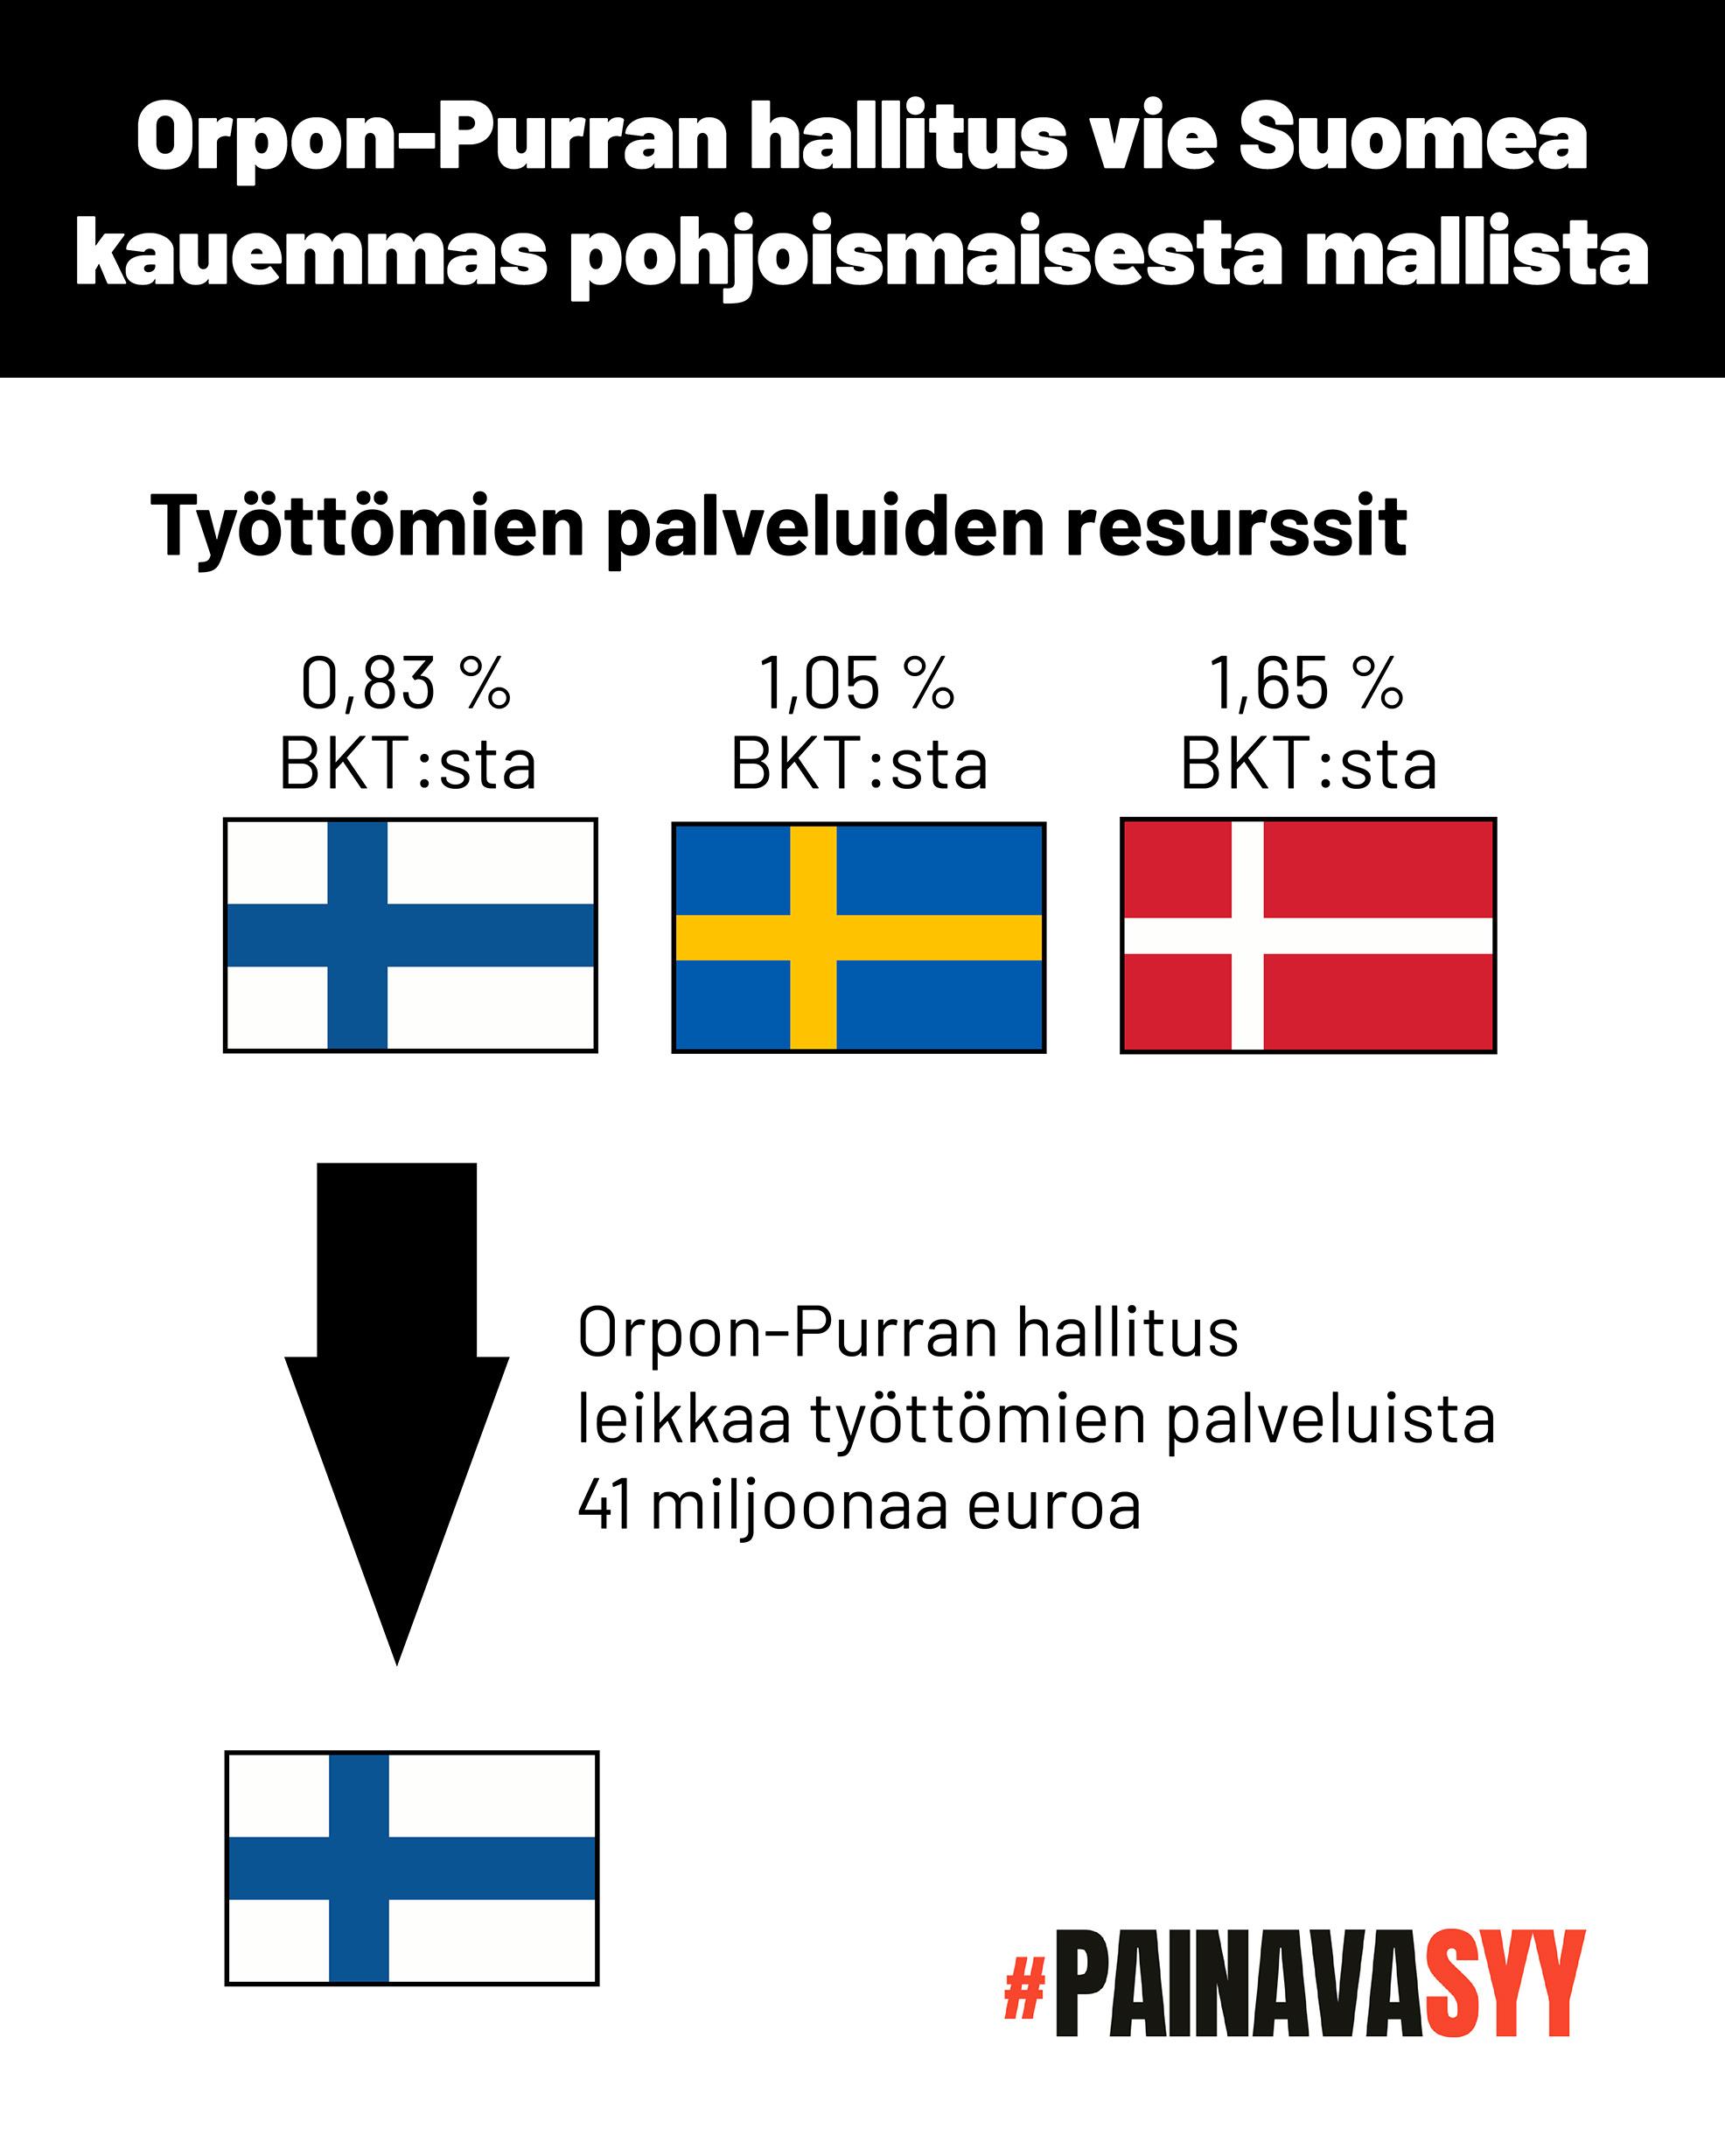 Kaavio osoittaa, että Suomessa työttömien palveluihin käytetään nyt 0,83 prosenttia bruttokansantuotteesta, Ruotsissa 1,05 prosenttia ja Tanskassa 1,65 prosenttia. Orpon-Purran hallitus leikkaa työttömien palveluista 41 miljoonaa euroa.